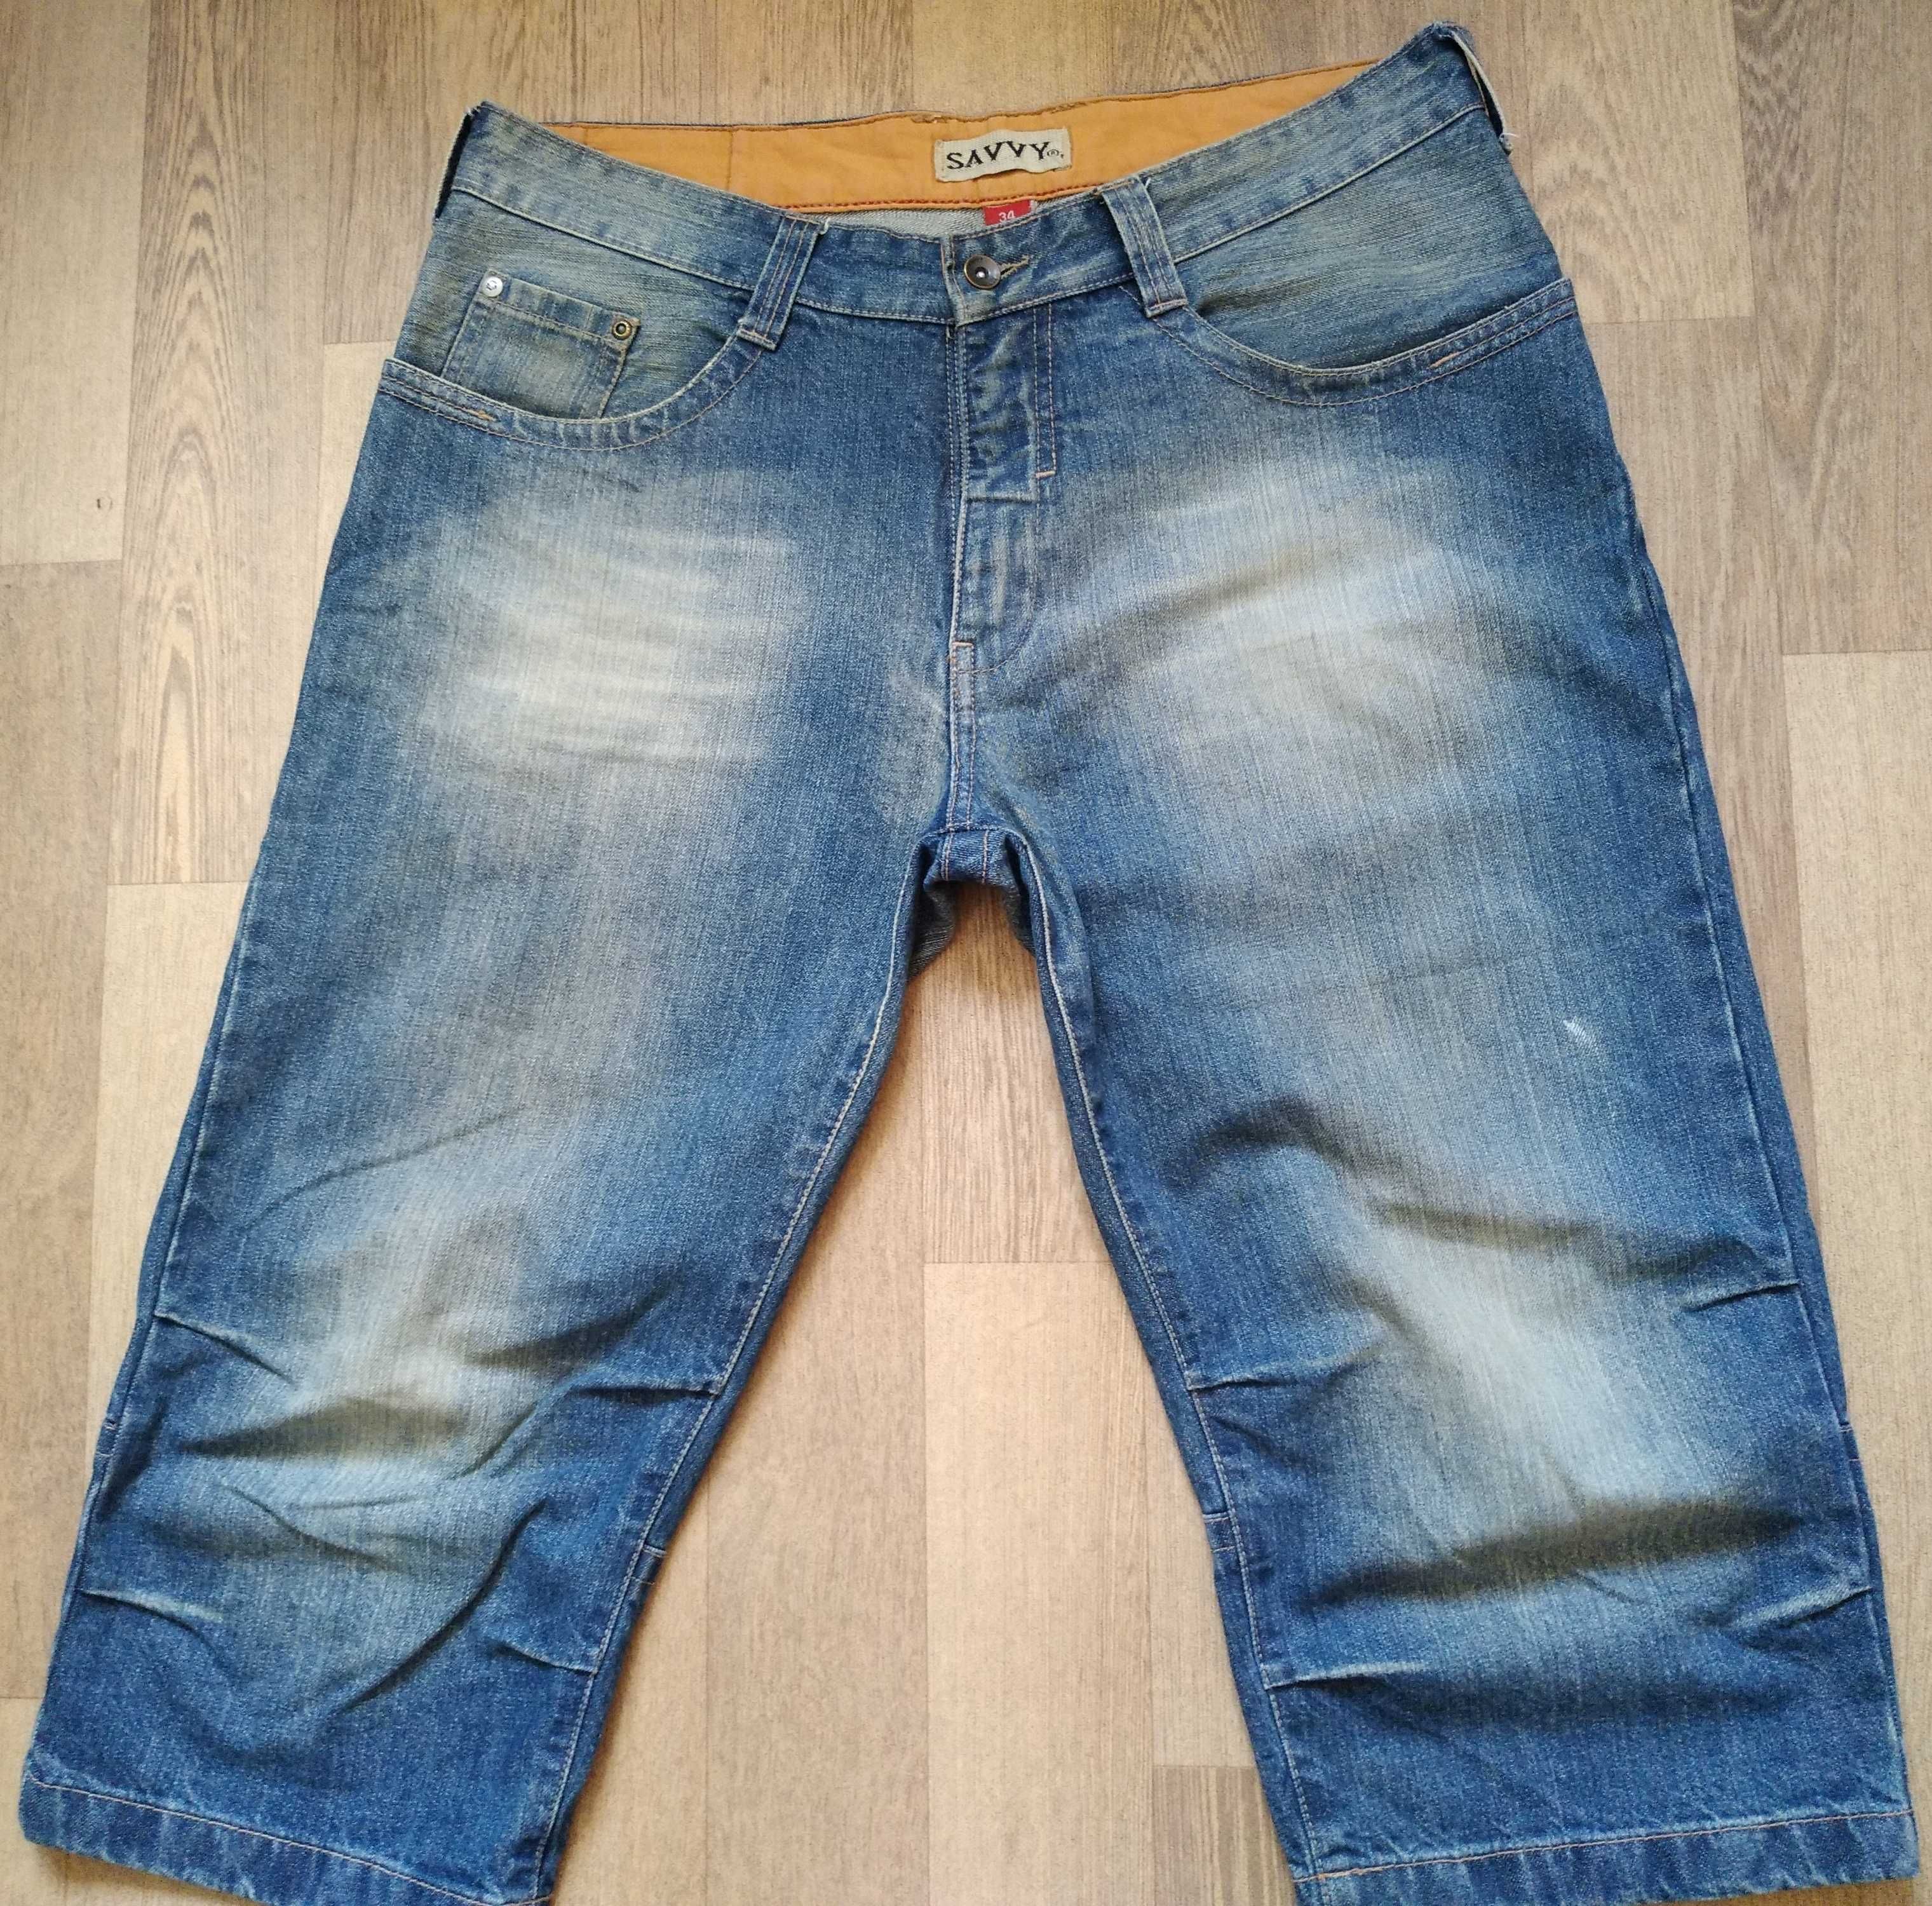 Мужские джинсовые шорты Savvy размер 34